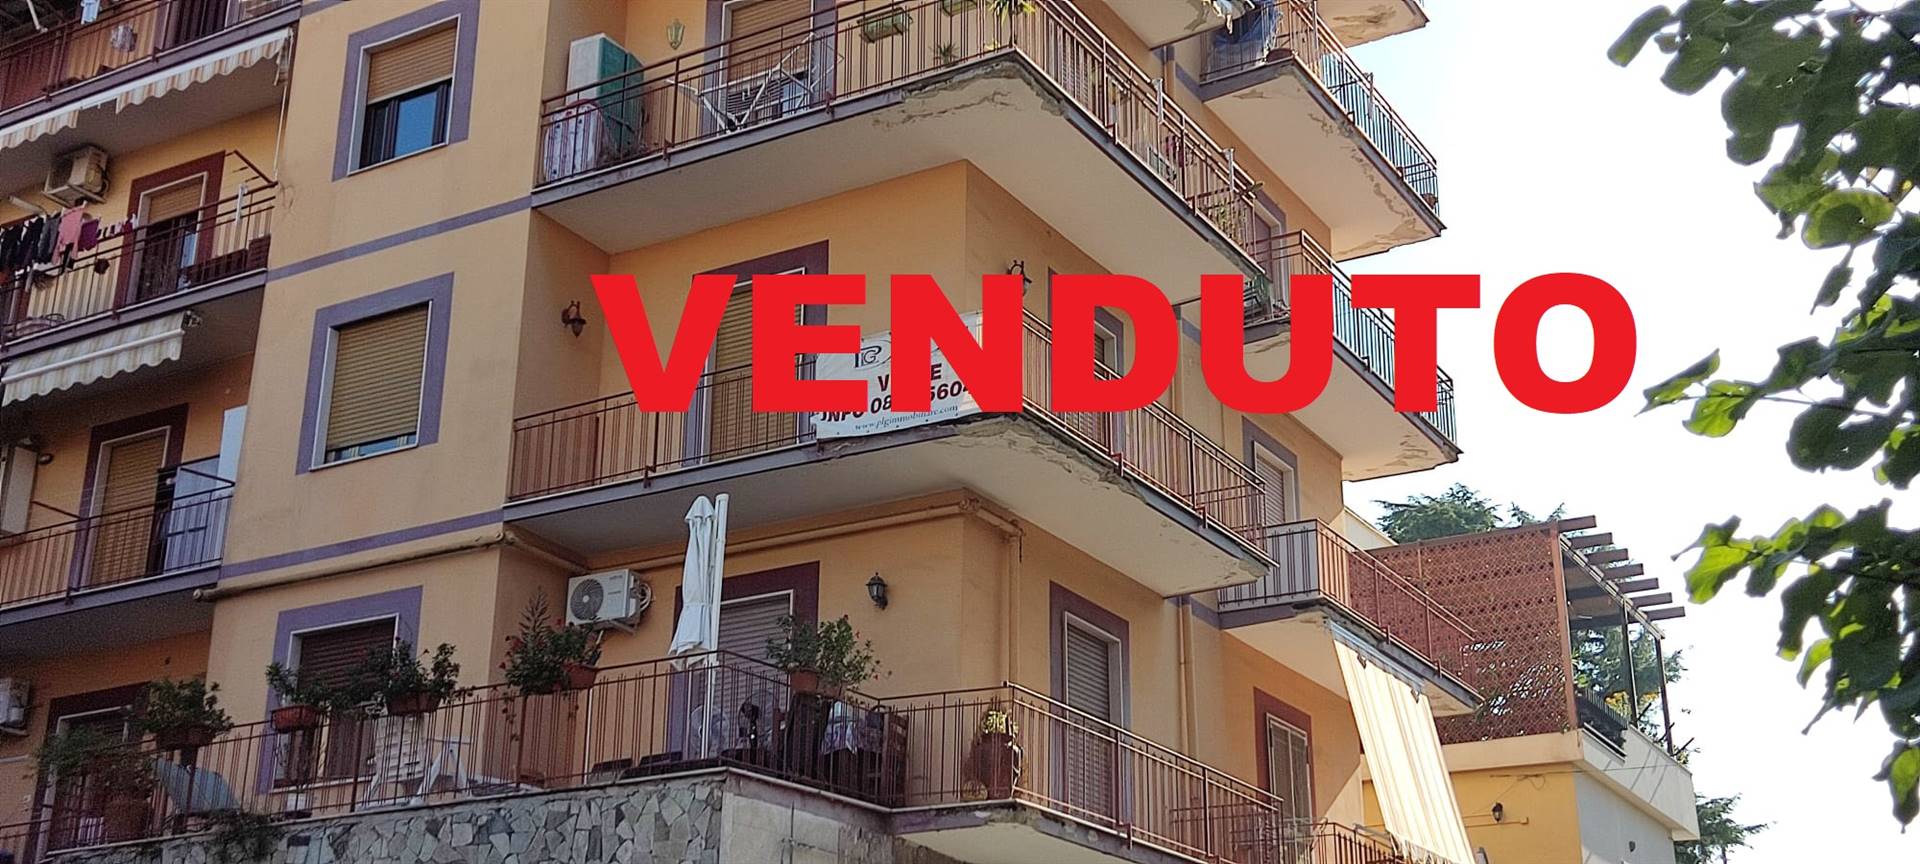 Appartamento in vendita a San Giorgio a Cremano, 4 locali, zona Località: BASSA, prezzo € 230.000 | CambioCasa.it